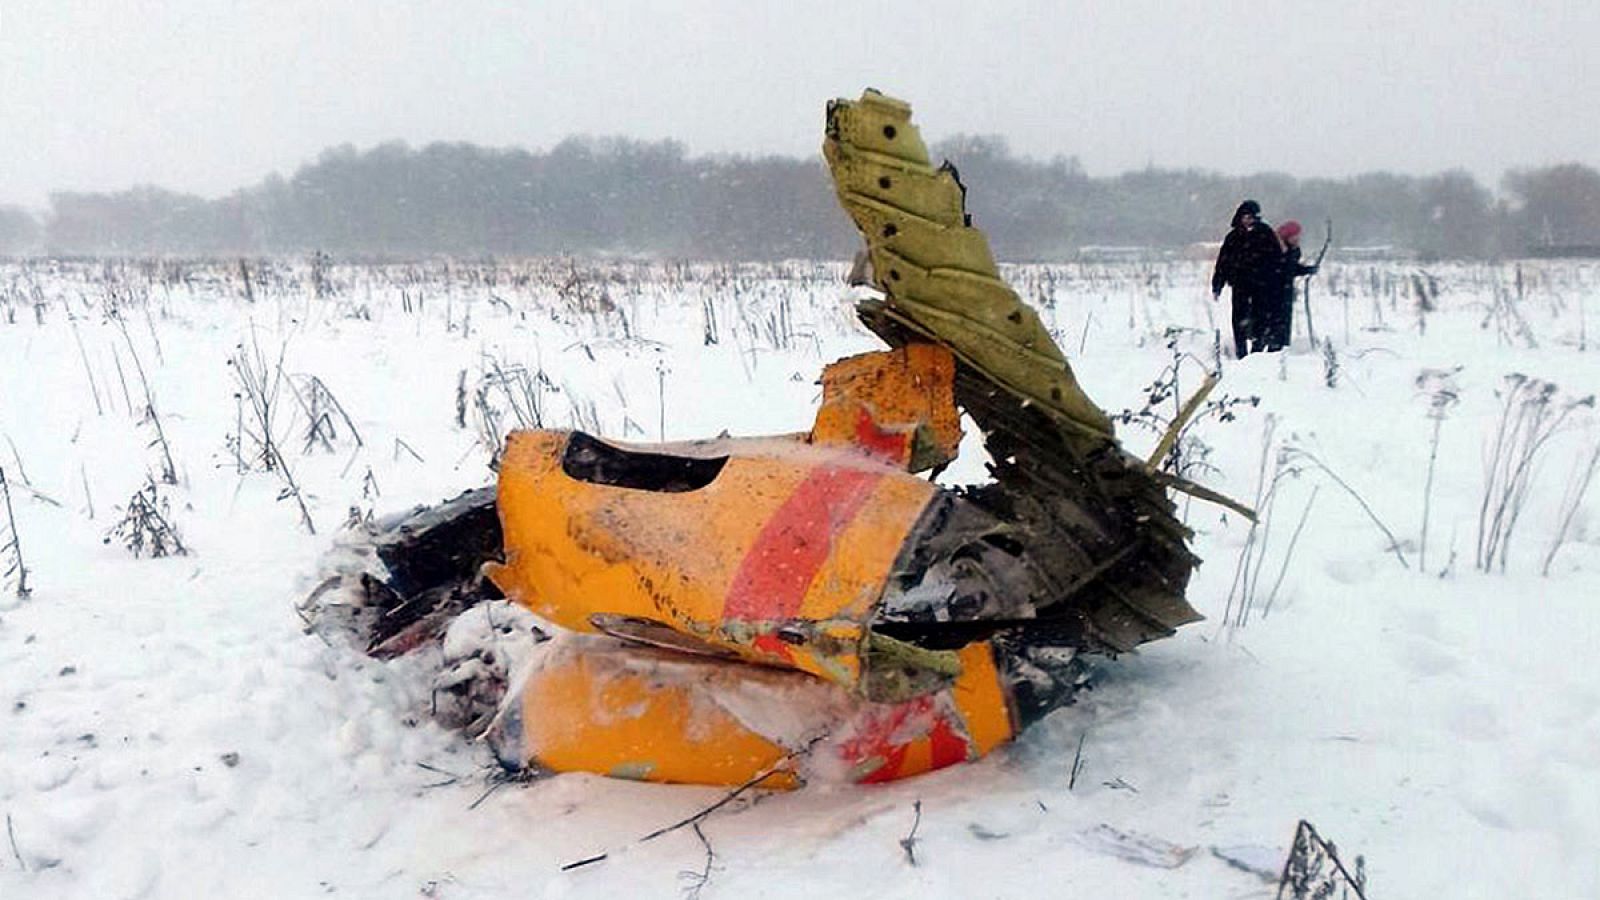 El avión siniestrado en Moscú explotó tras chocar con la tierra